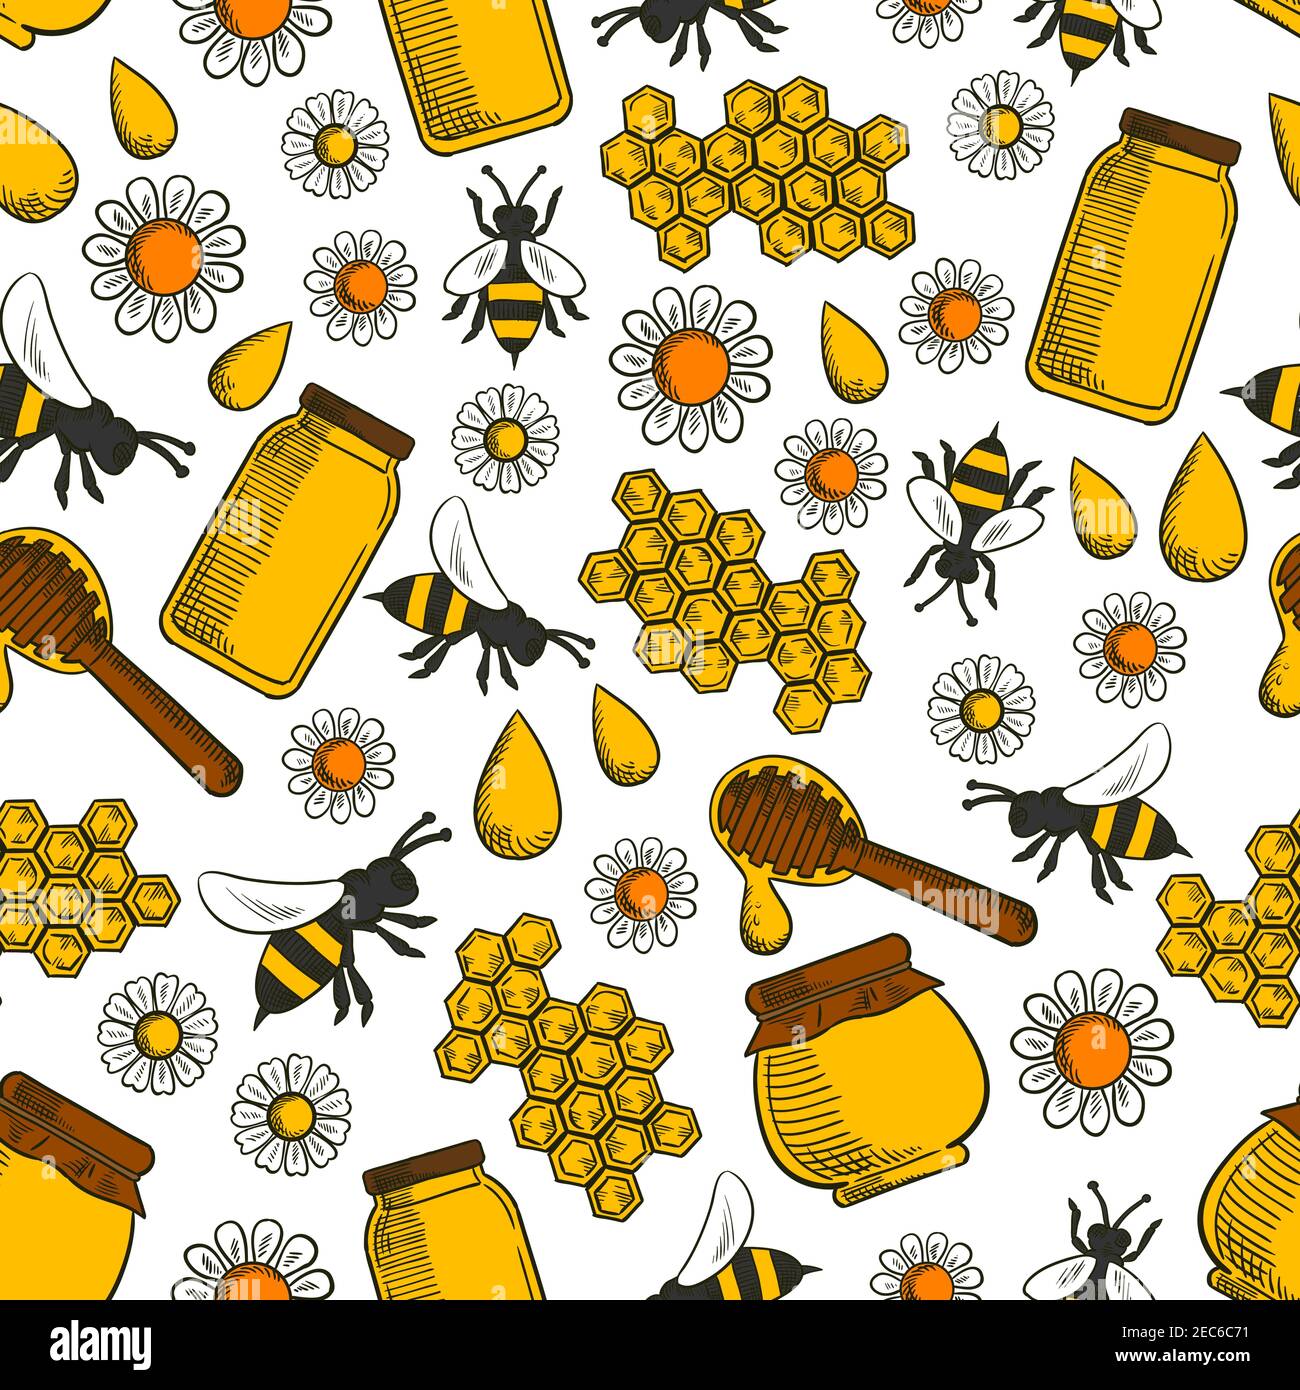 82738 Bee Wallpaper Images Stock Photos  Vectors  Shutterstock